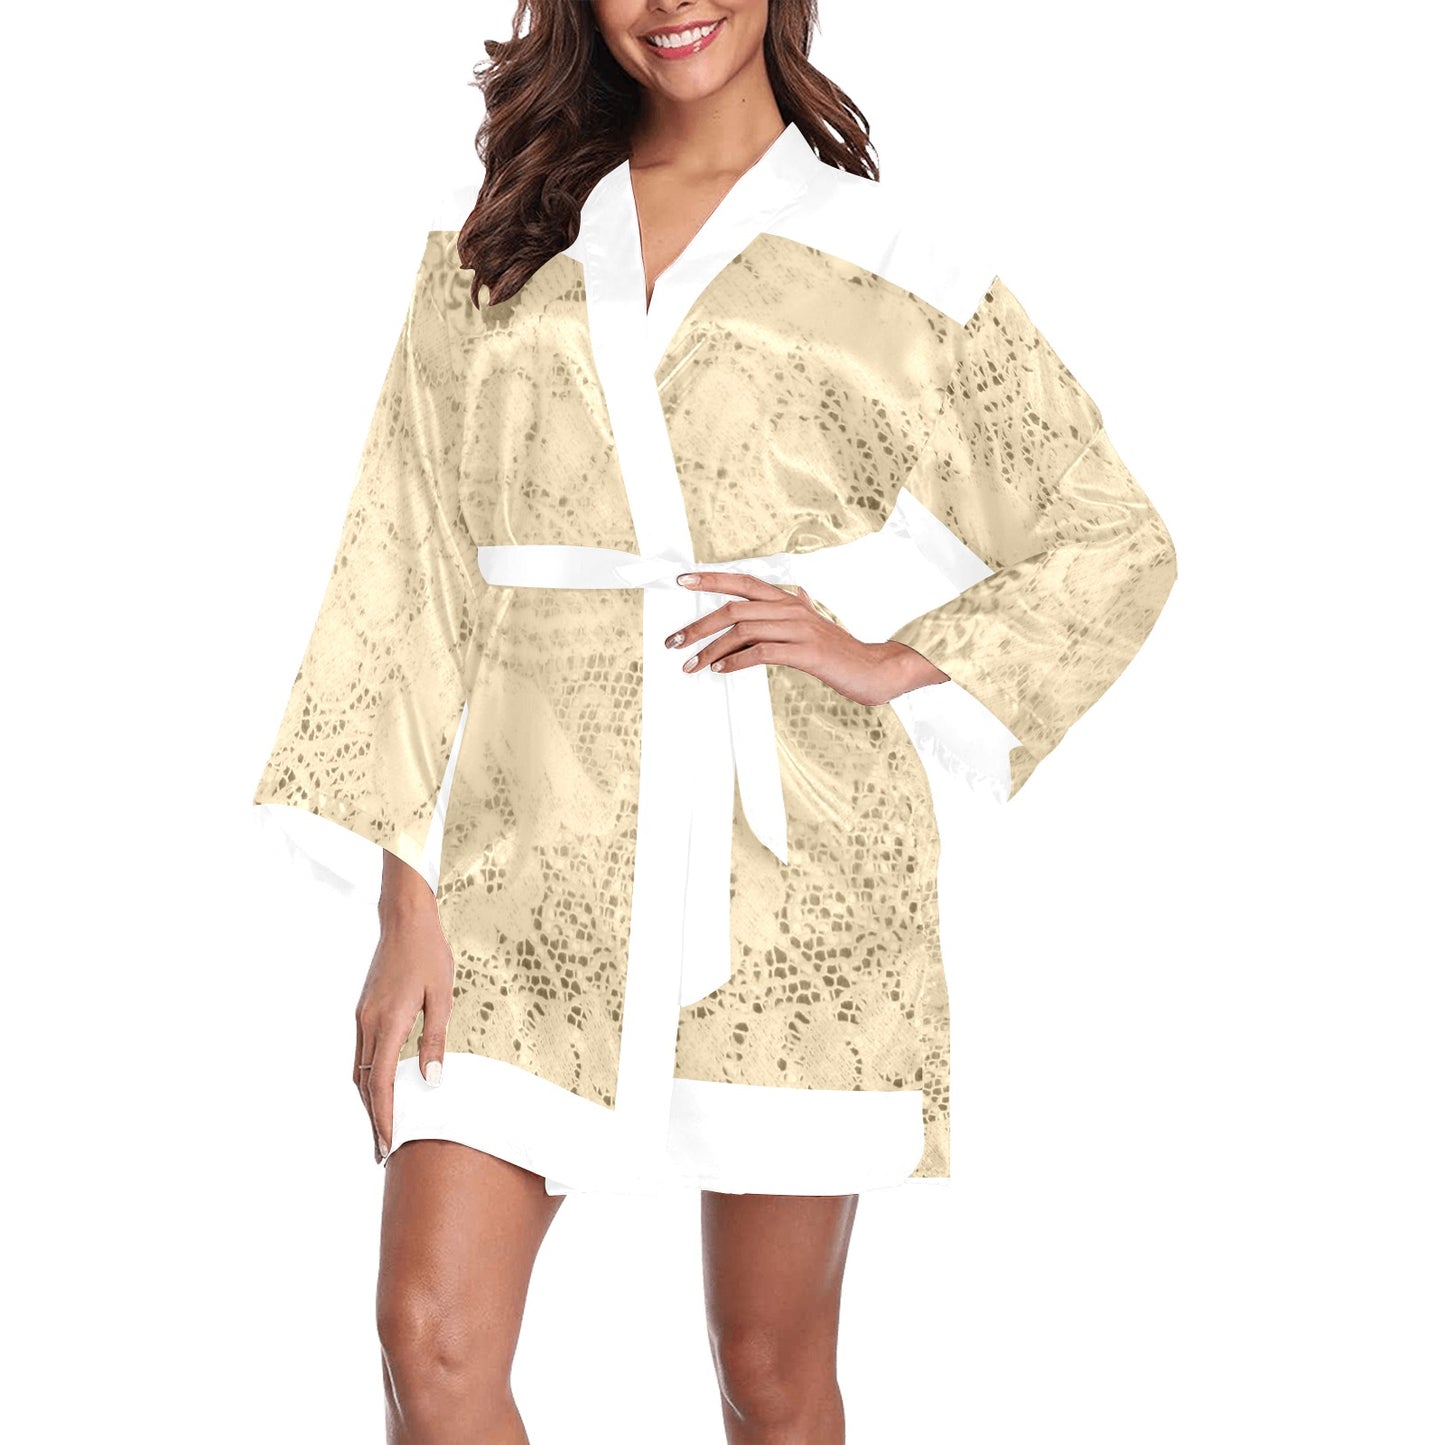 Victorian Lace Kimono Robe, Black or White Trim, Sizes XS to 2XL, Design 26